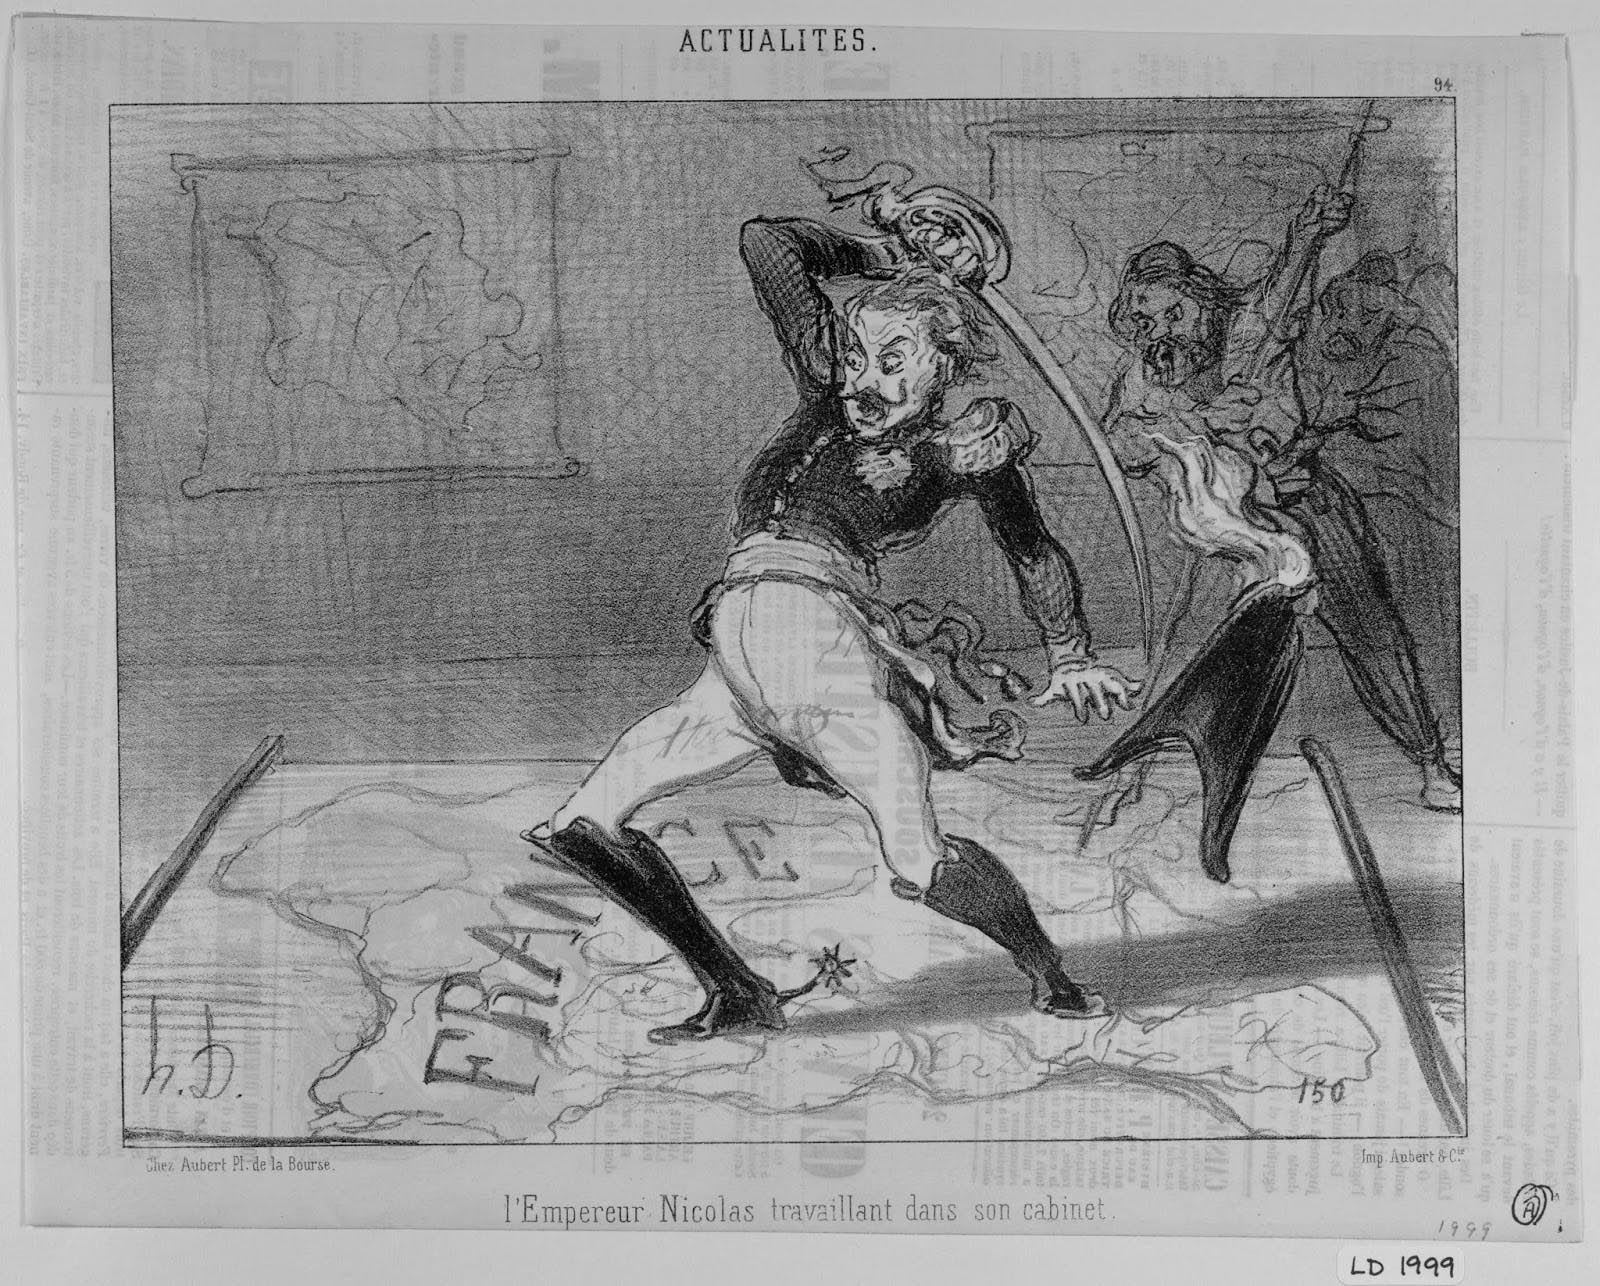 Honoré Daumier. Actualités, no. 94.  Le Charivari. August 8, 1850. LD 1999